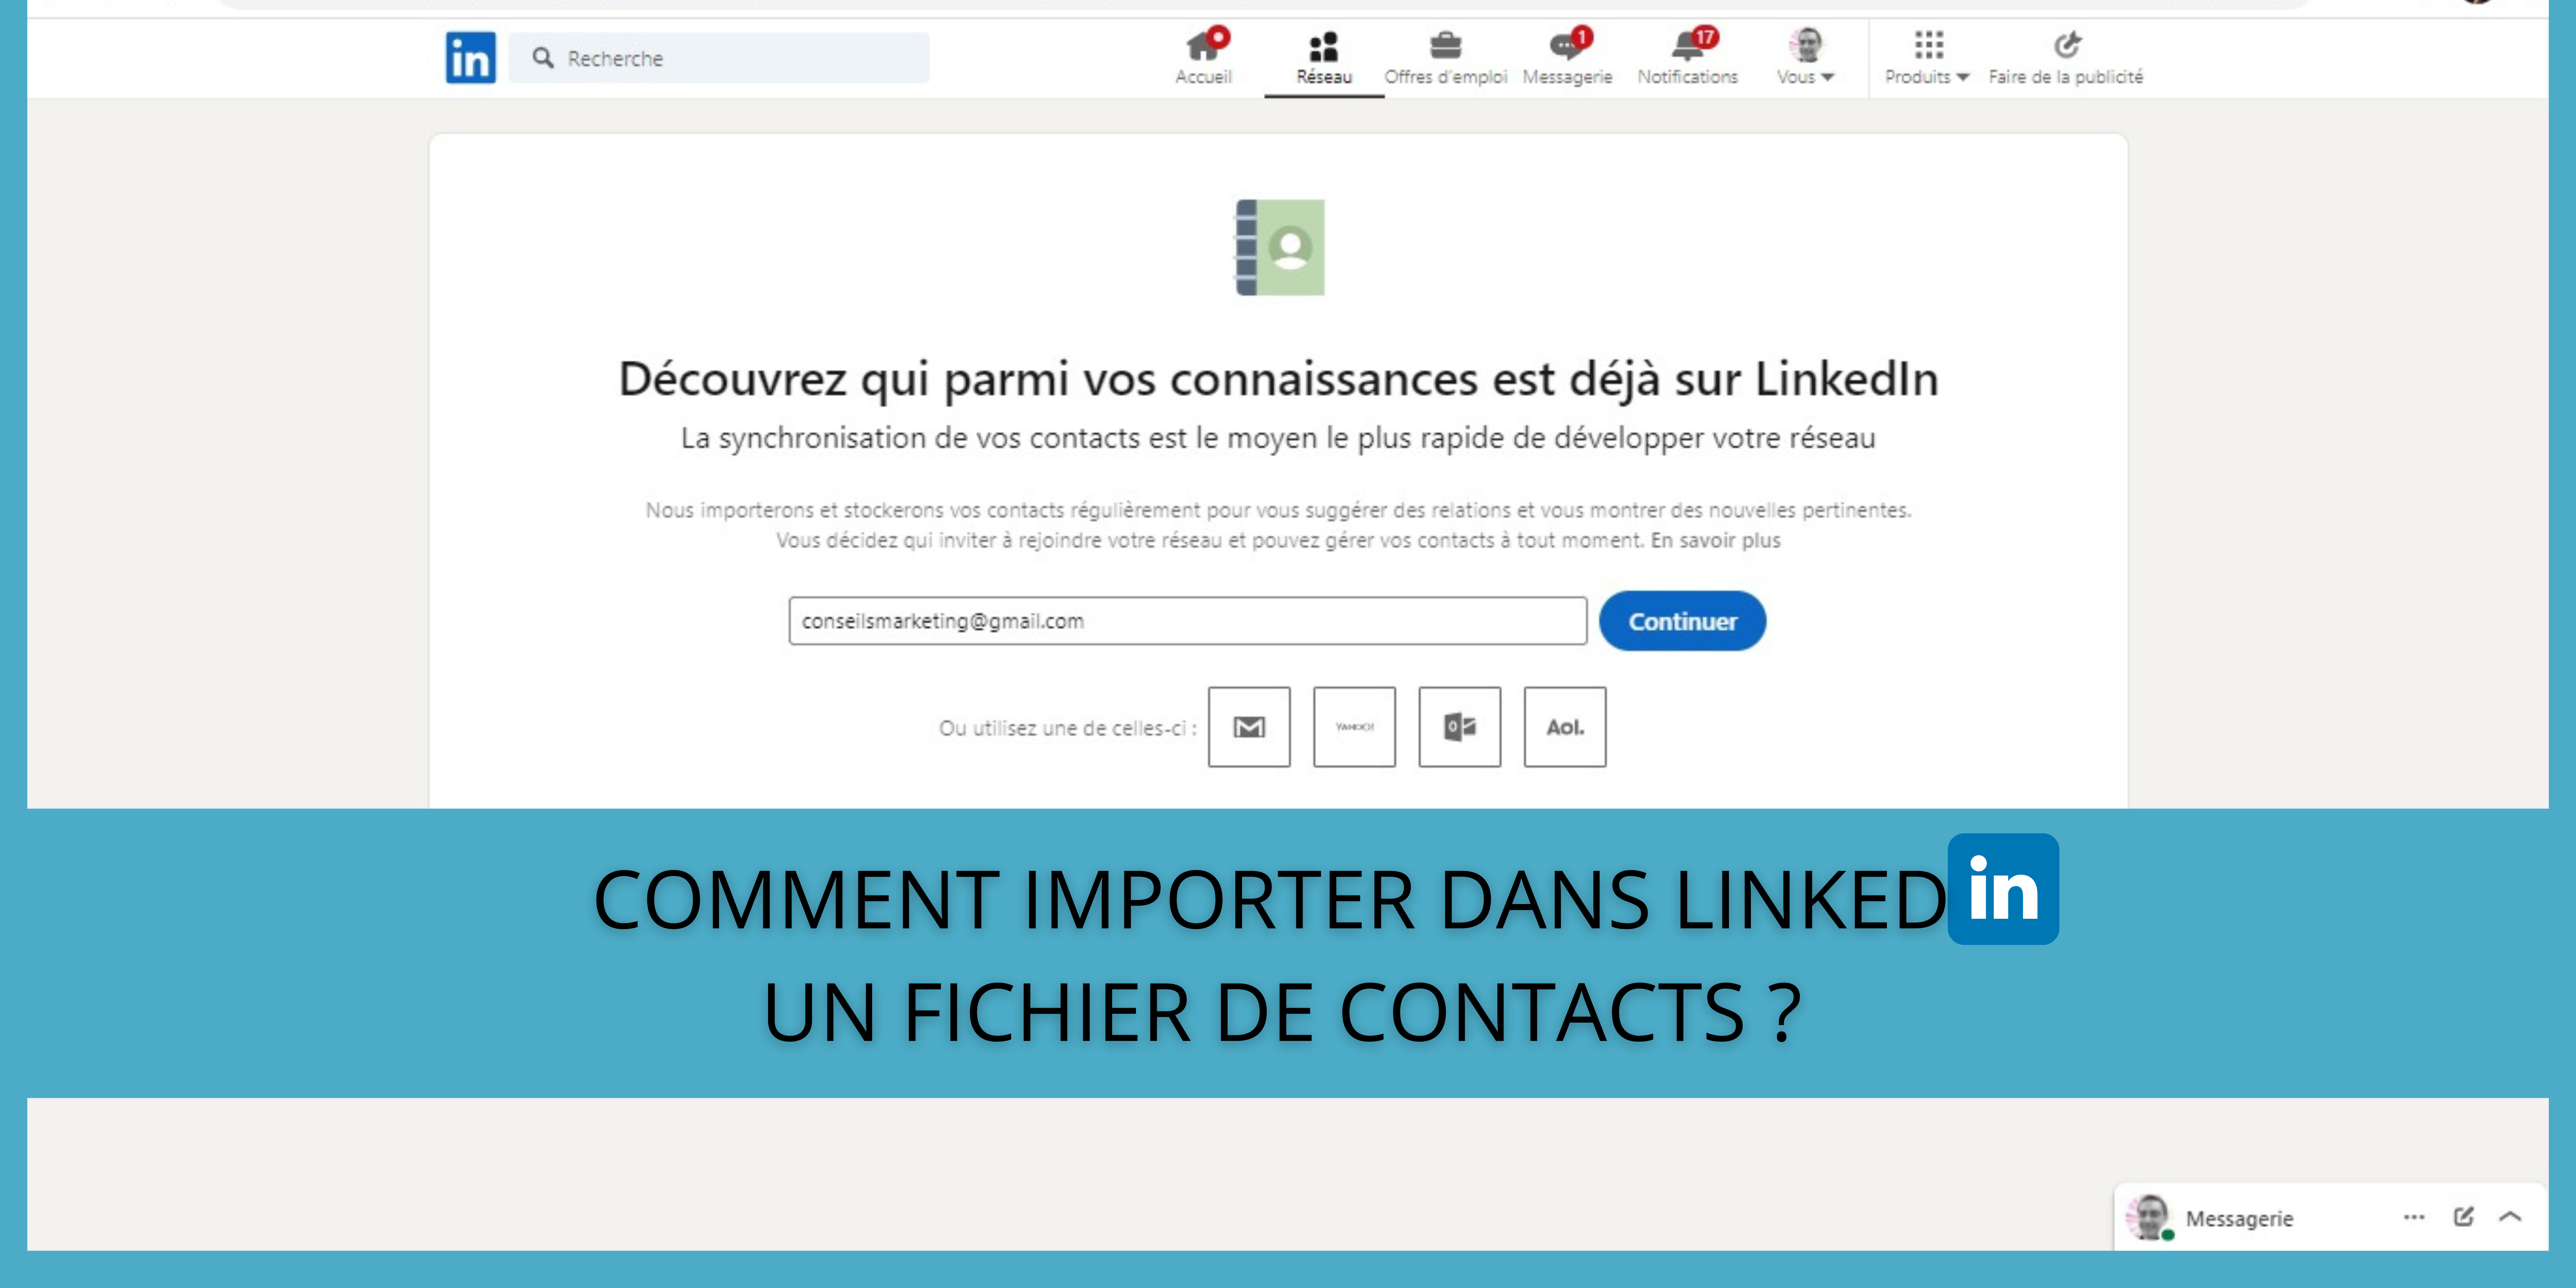 Comment importer dans LinkedIn un fichier de contacts ? 5